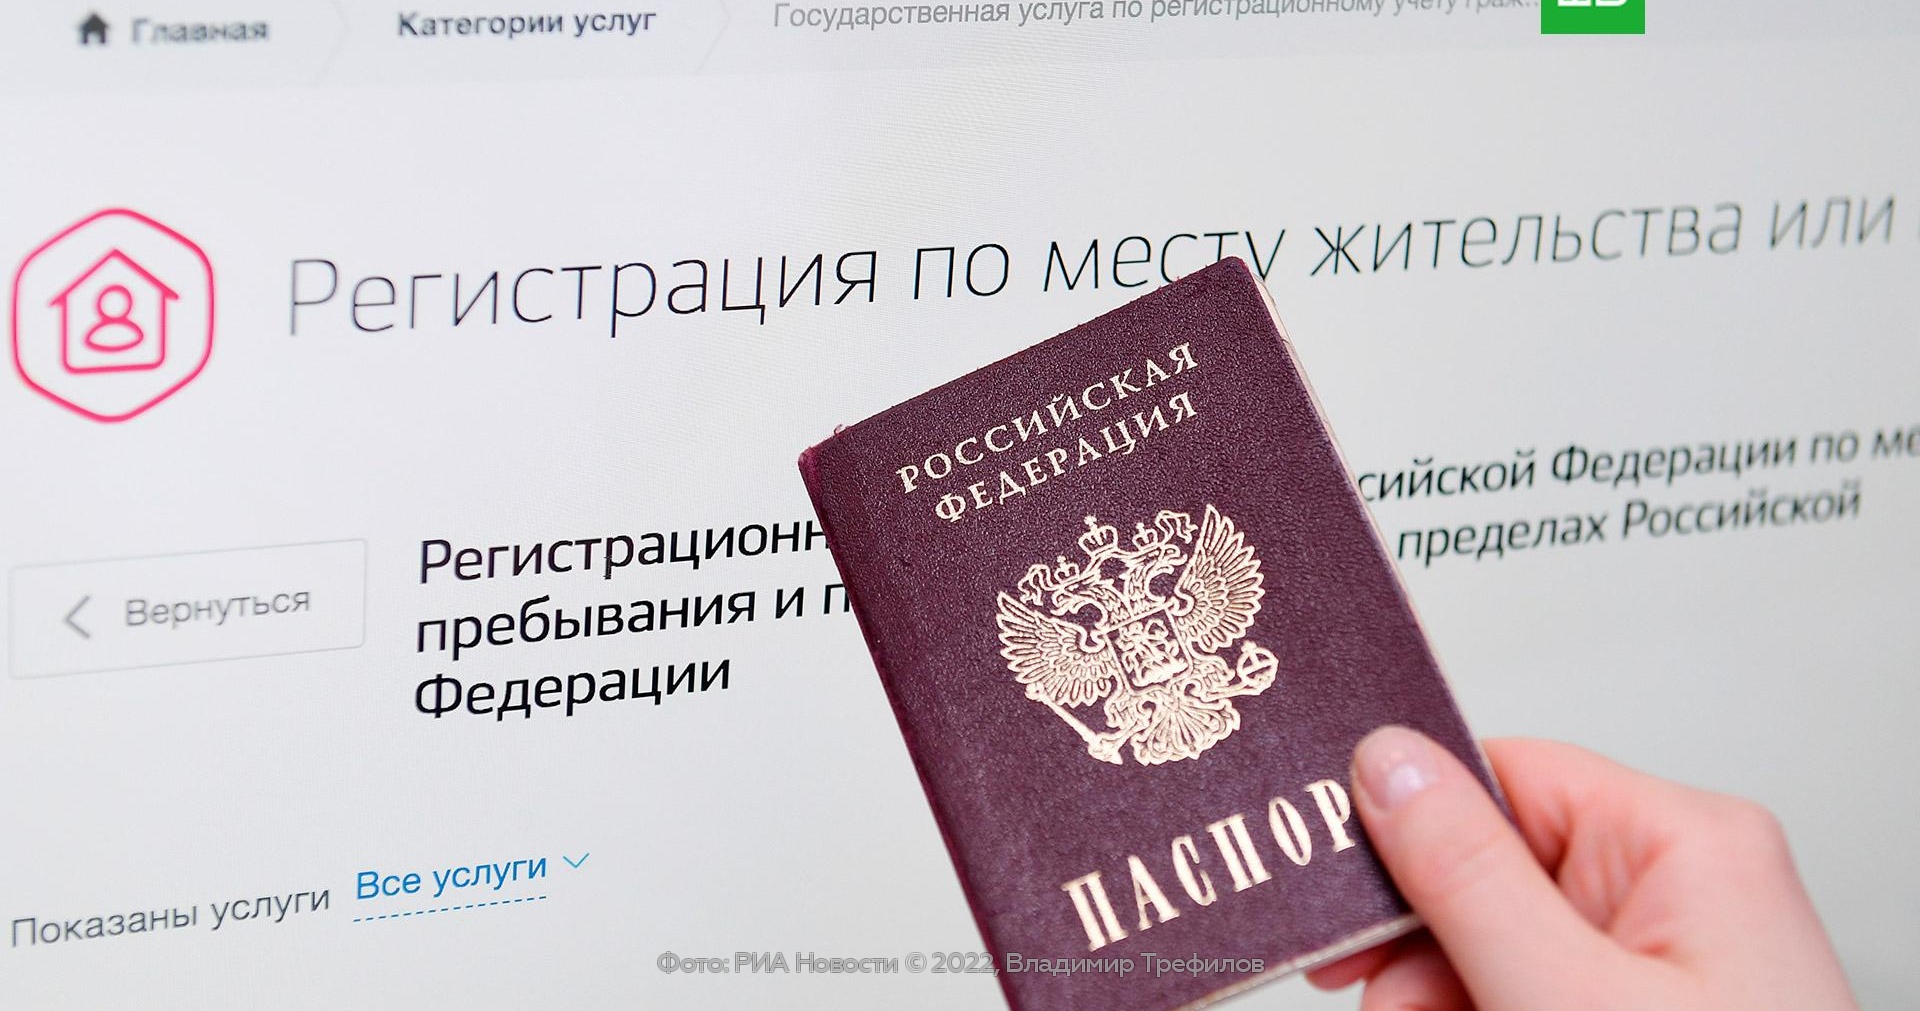 загрузить фото на госуслуги замена паспорта